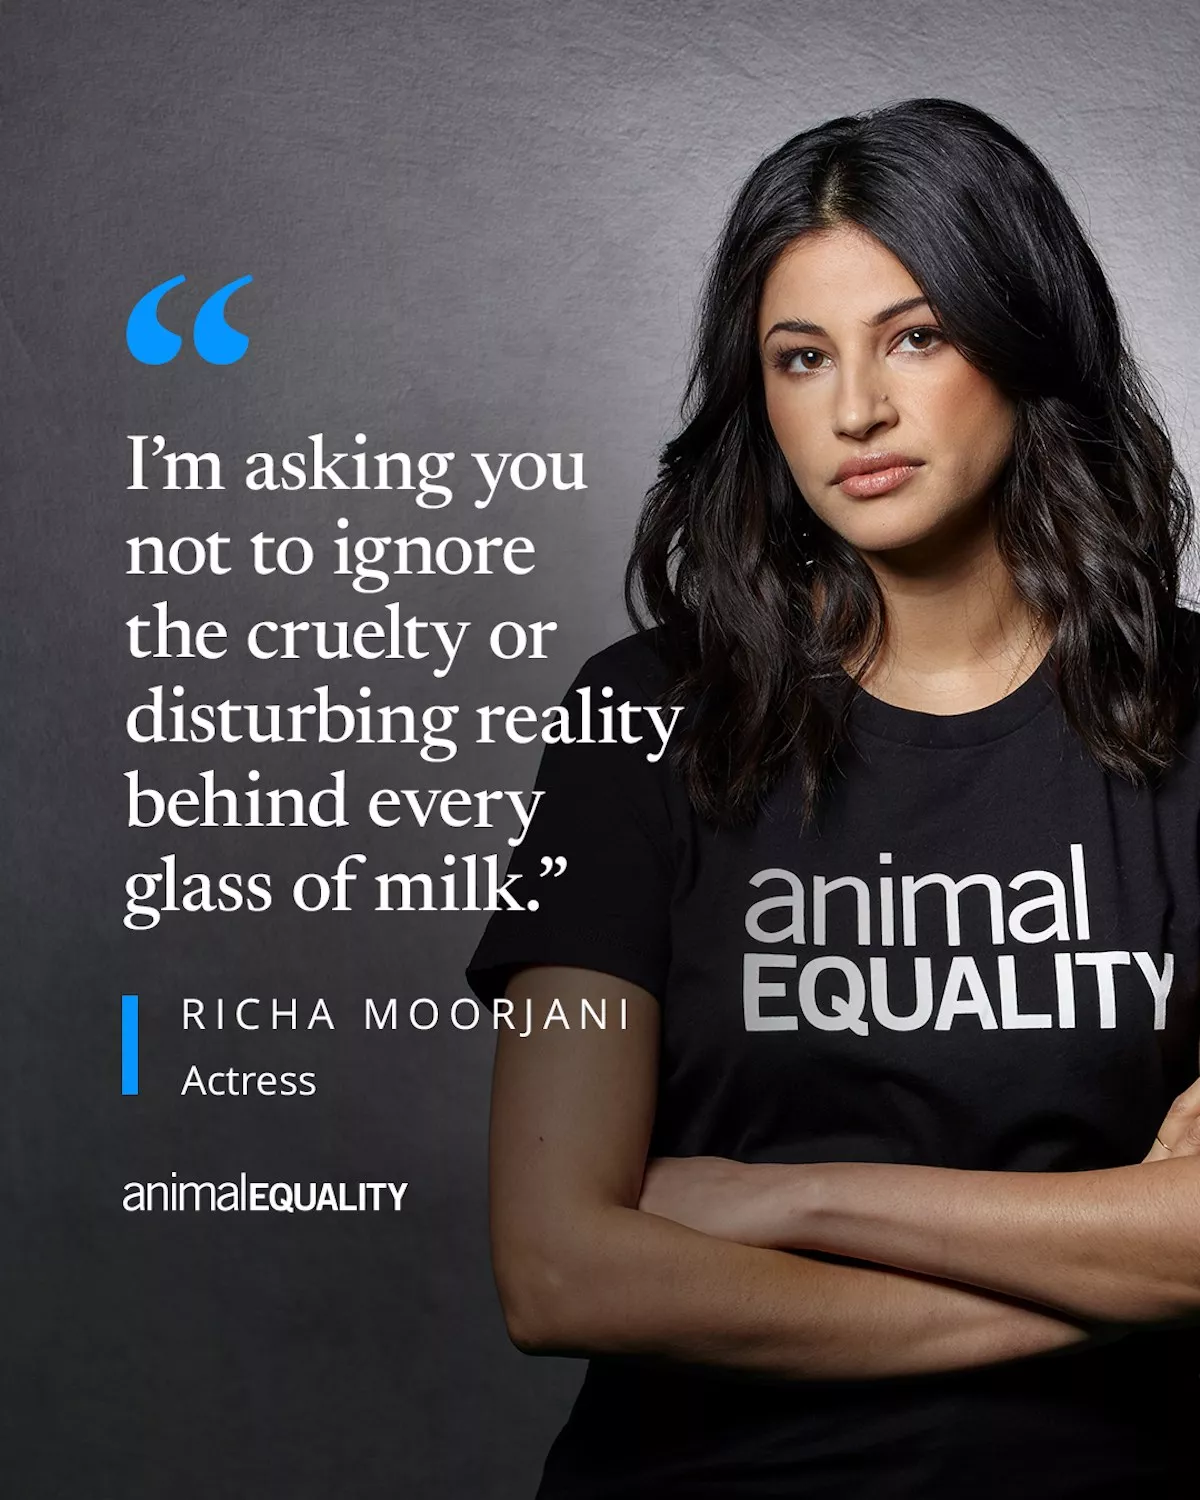 Richa Moorjani with Animal Equality shirt